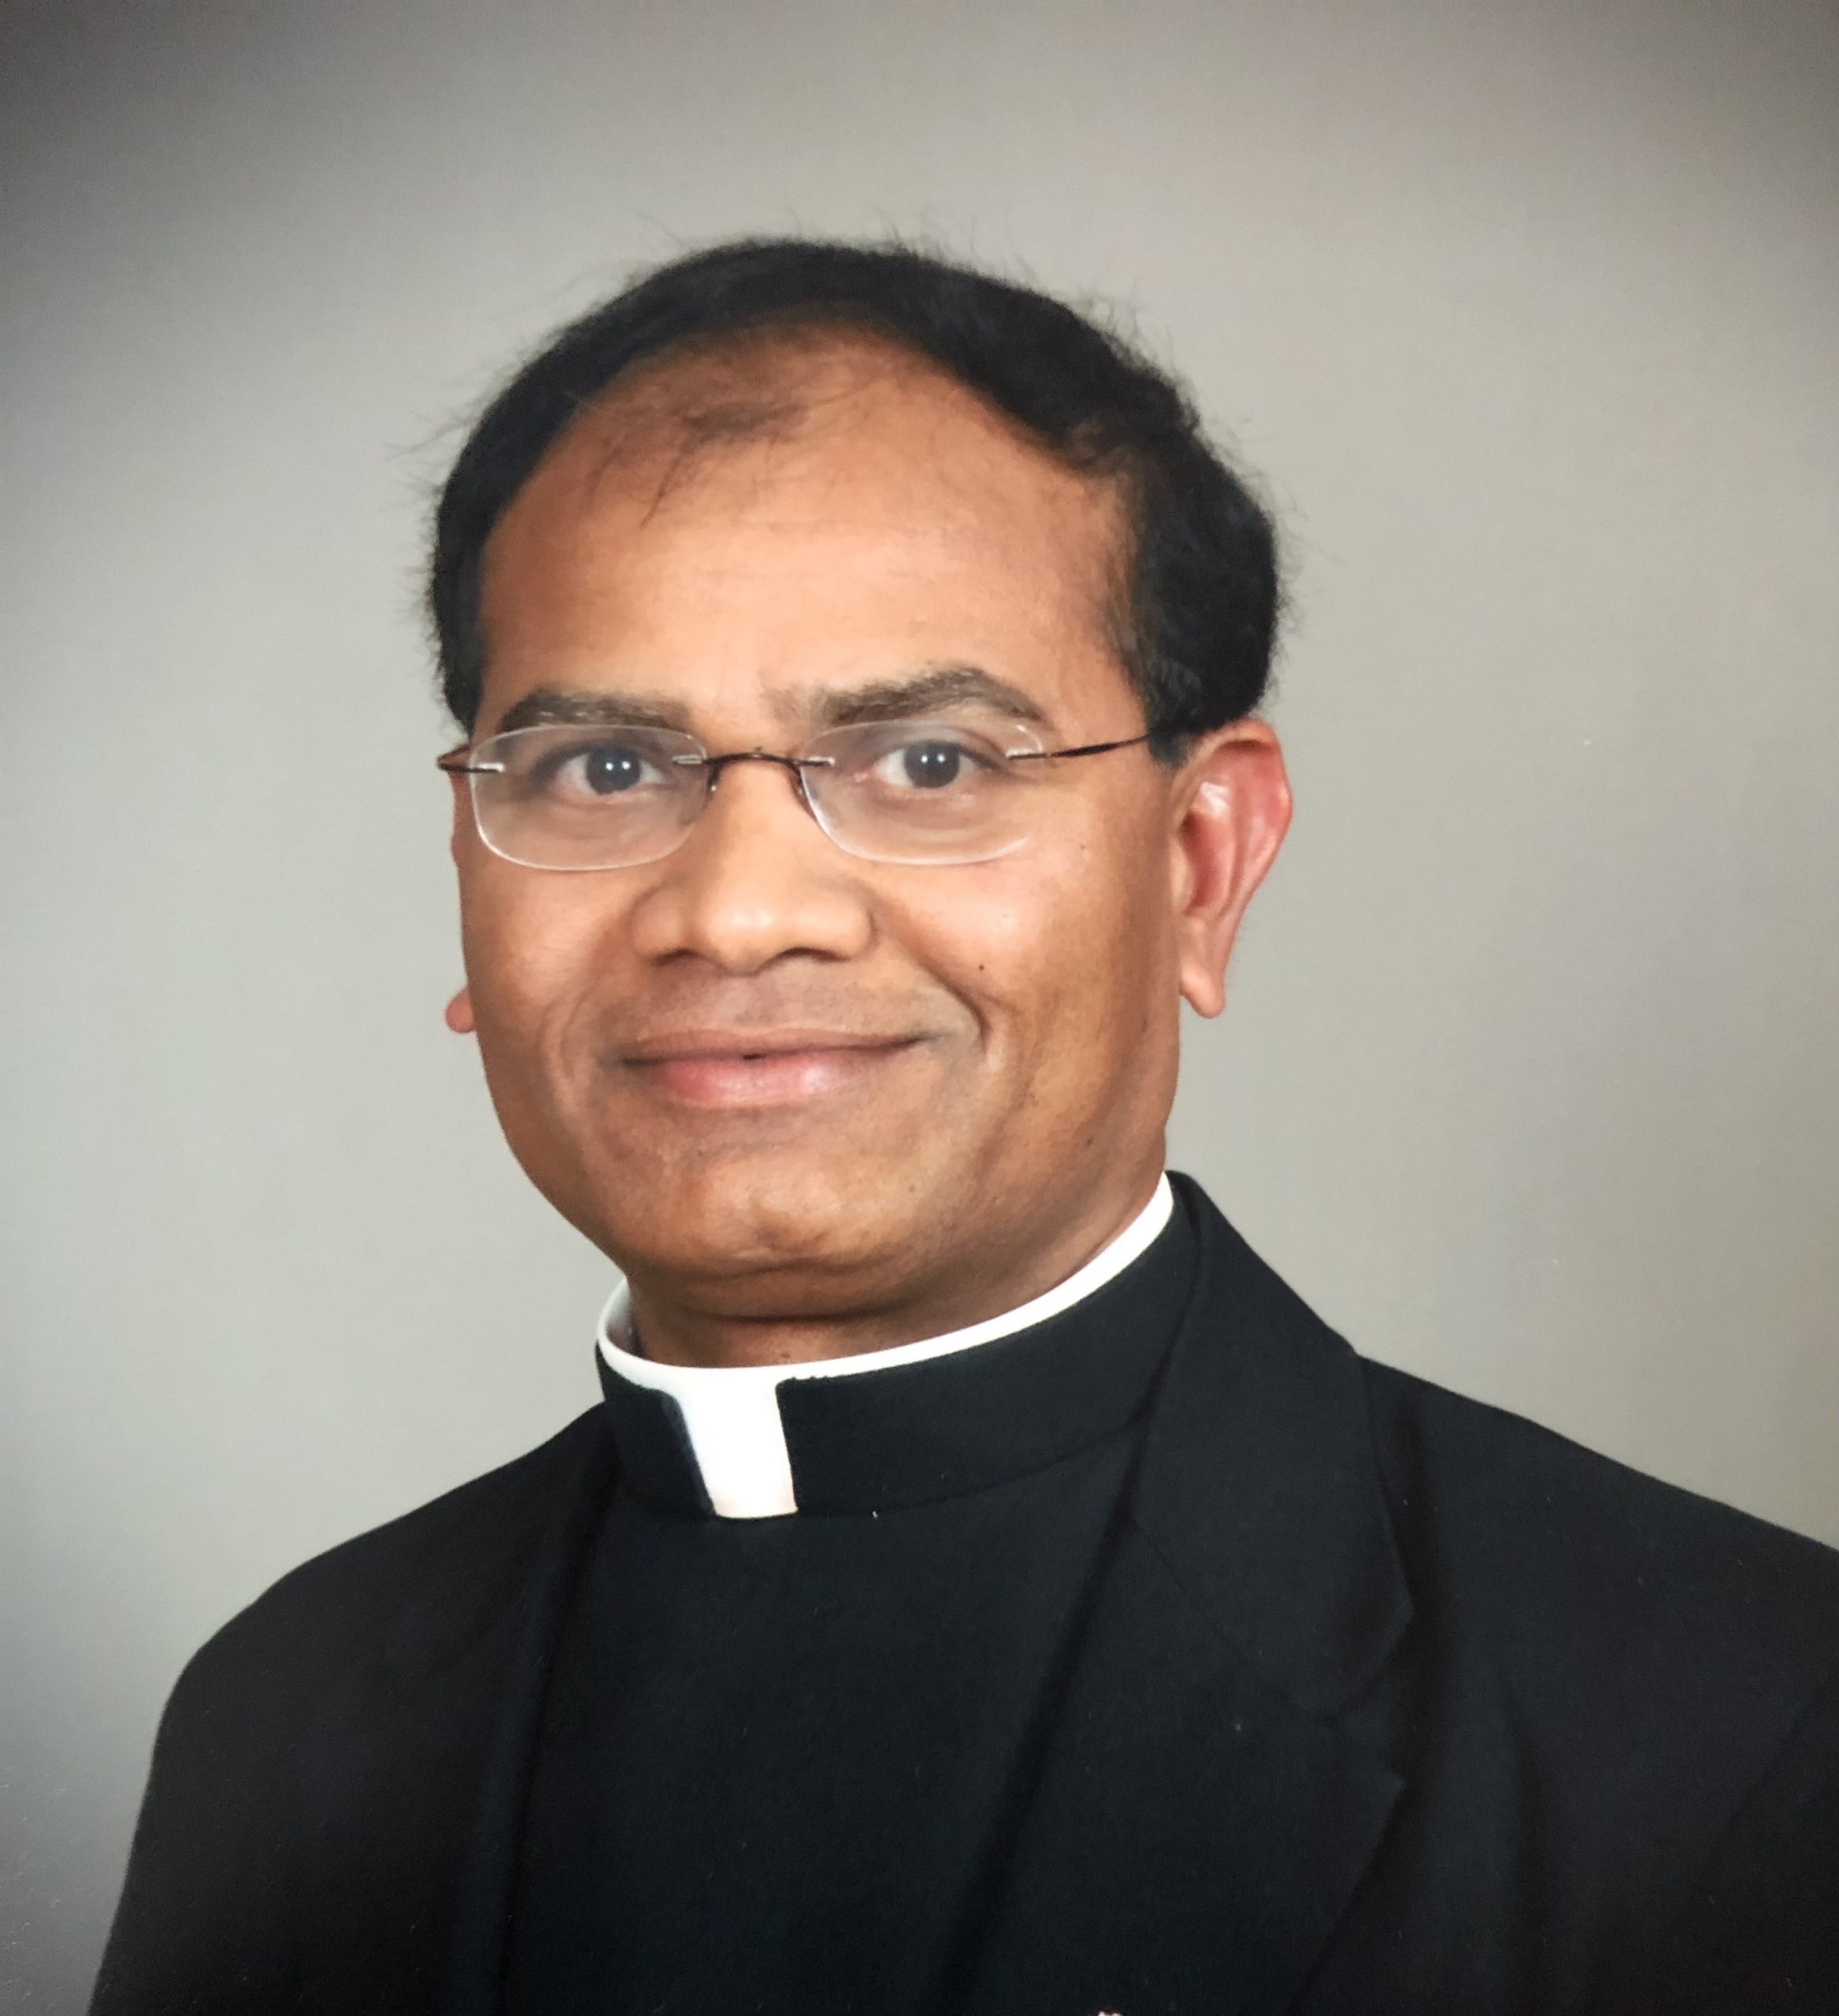 Fr. Sunder Ery